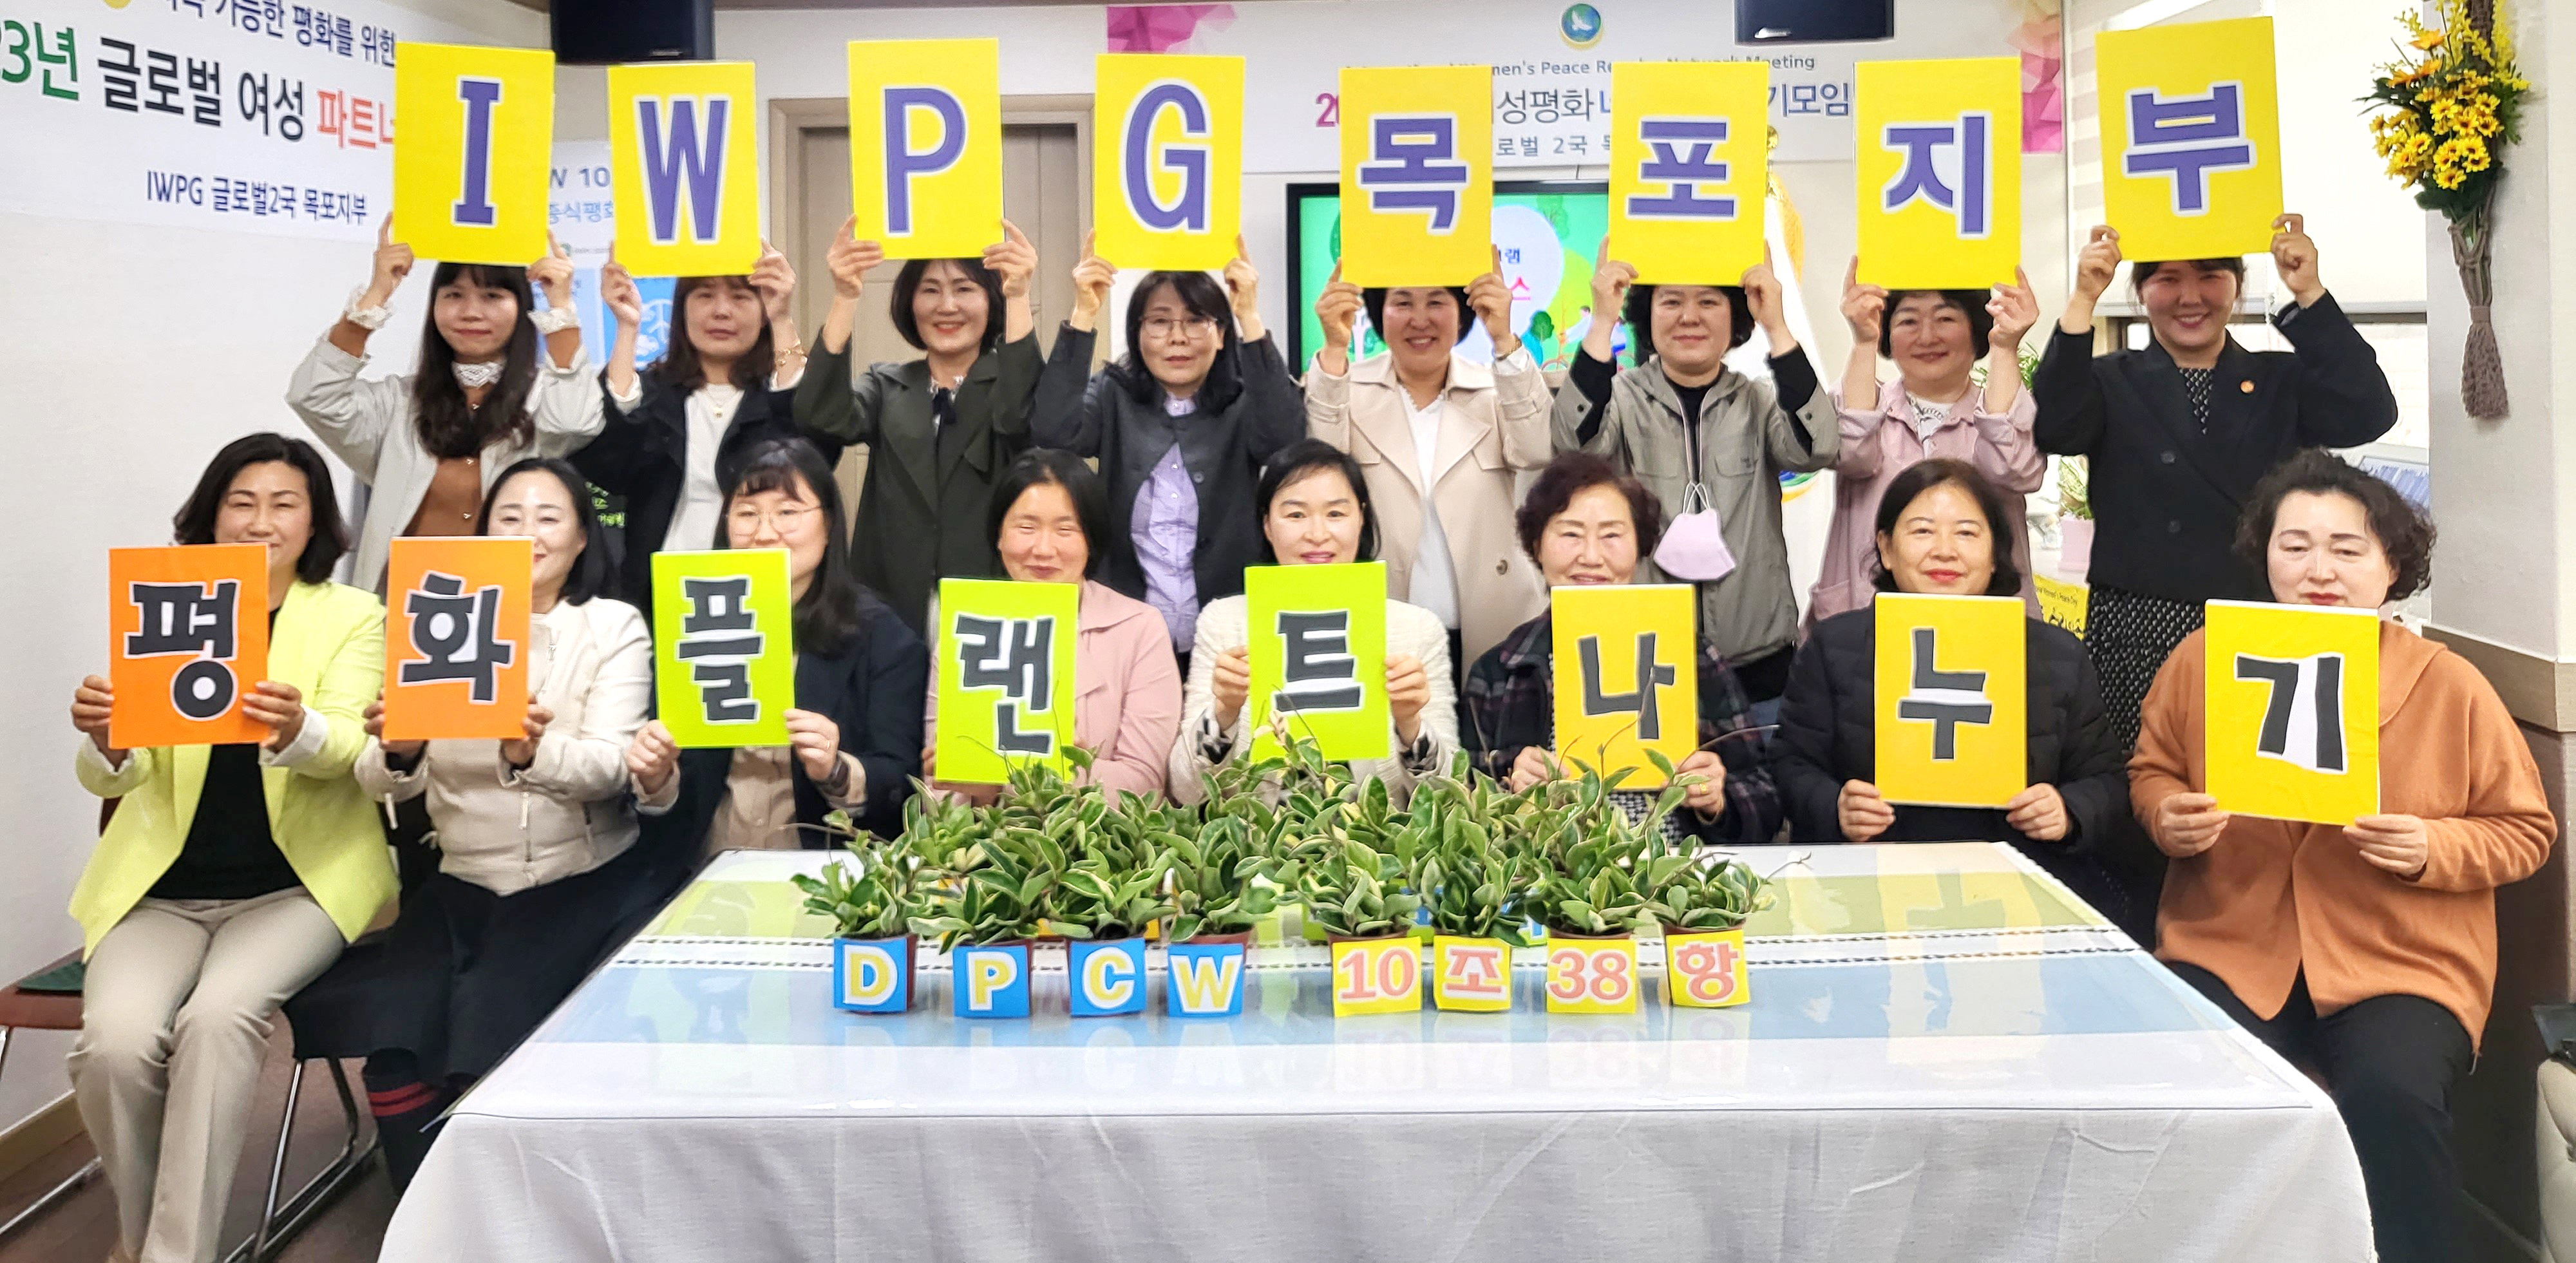 IWPG 목포지부, 4월 세계여성평화 네트워크 정기모임 개최